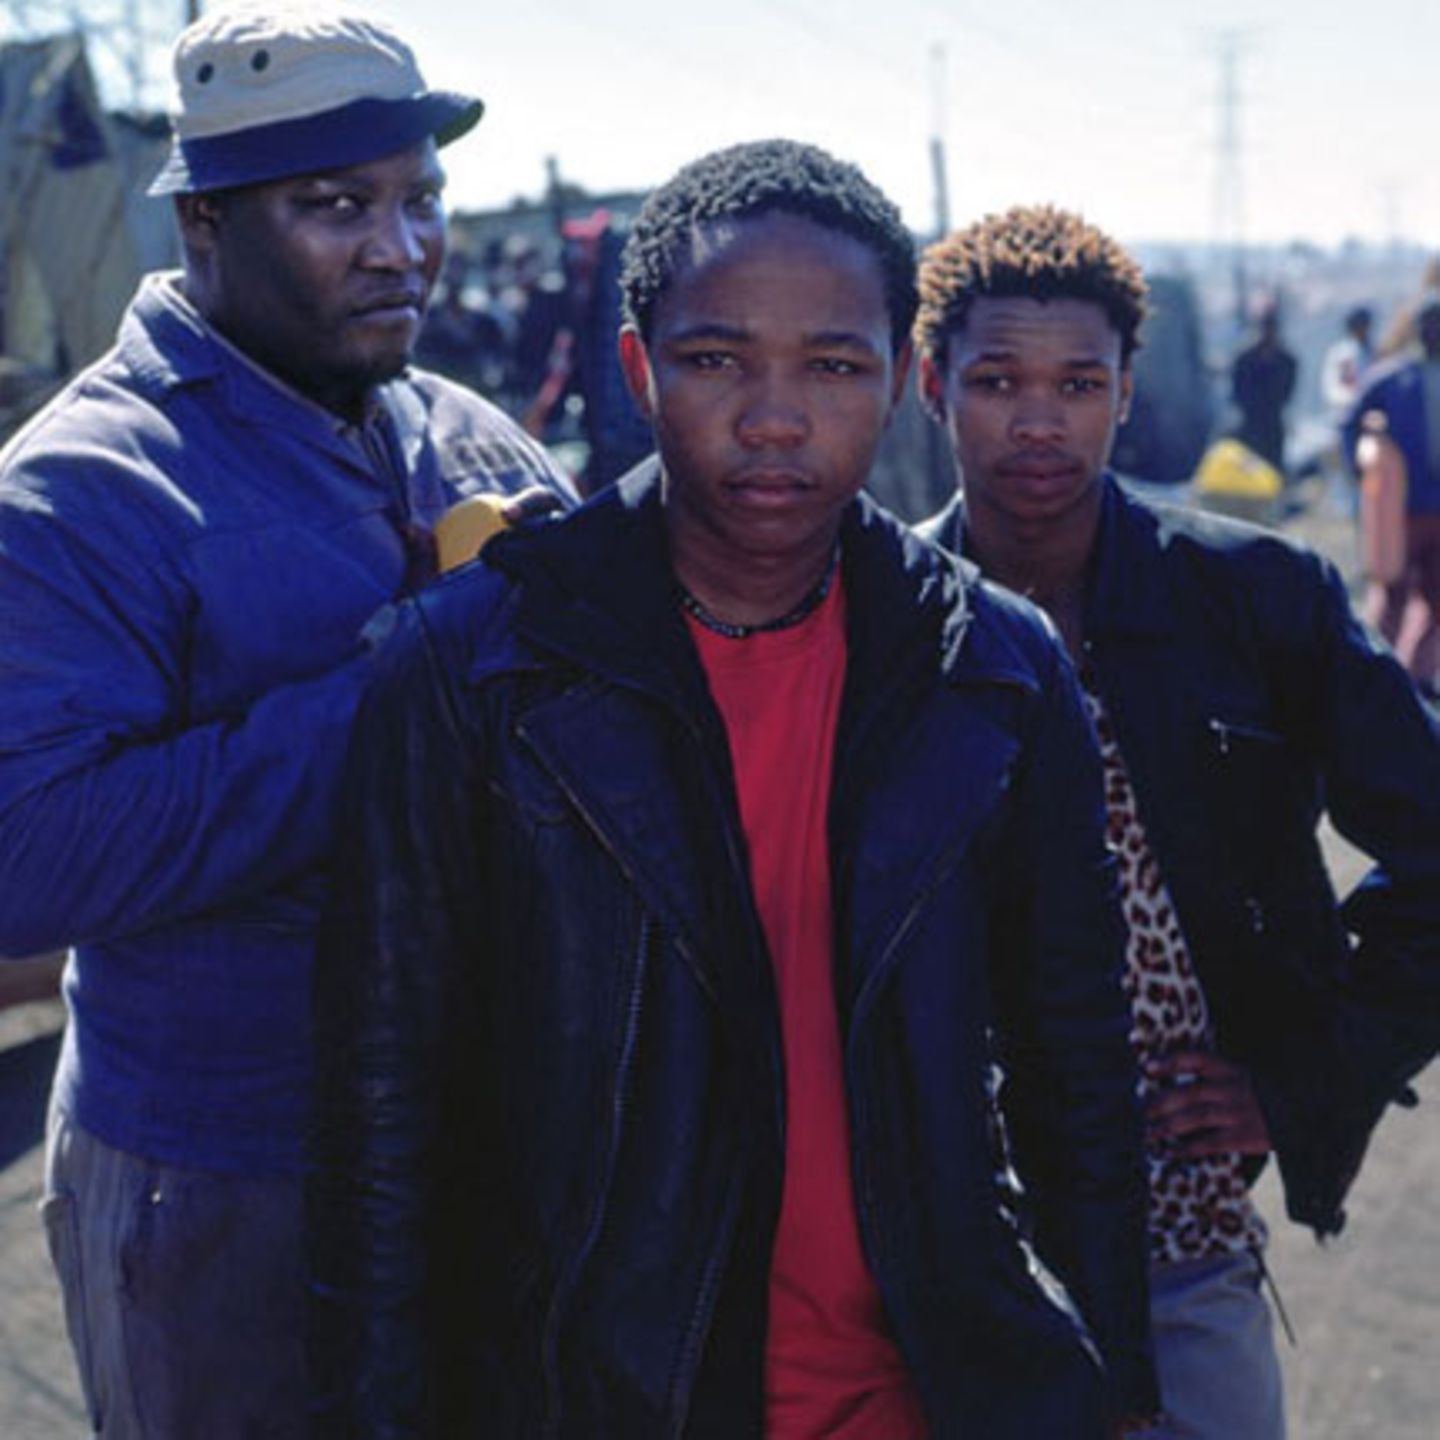 Tsotsi und seine Gang verbreiten Schrecken im Ghetto